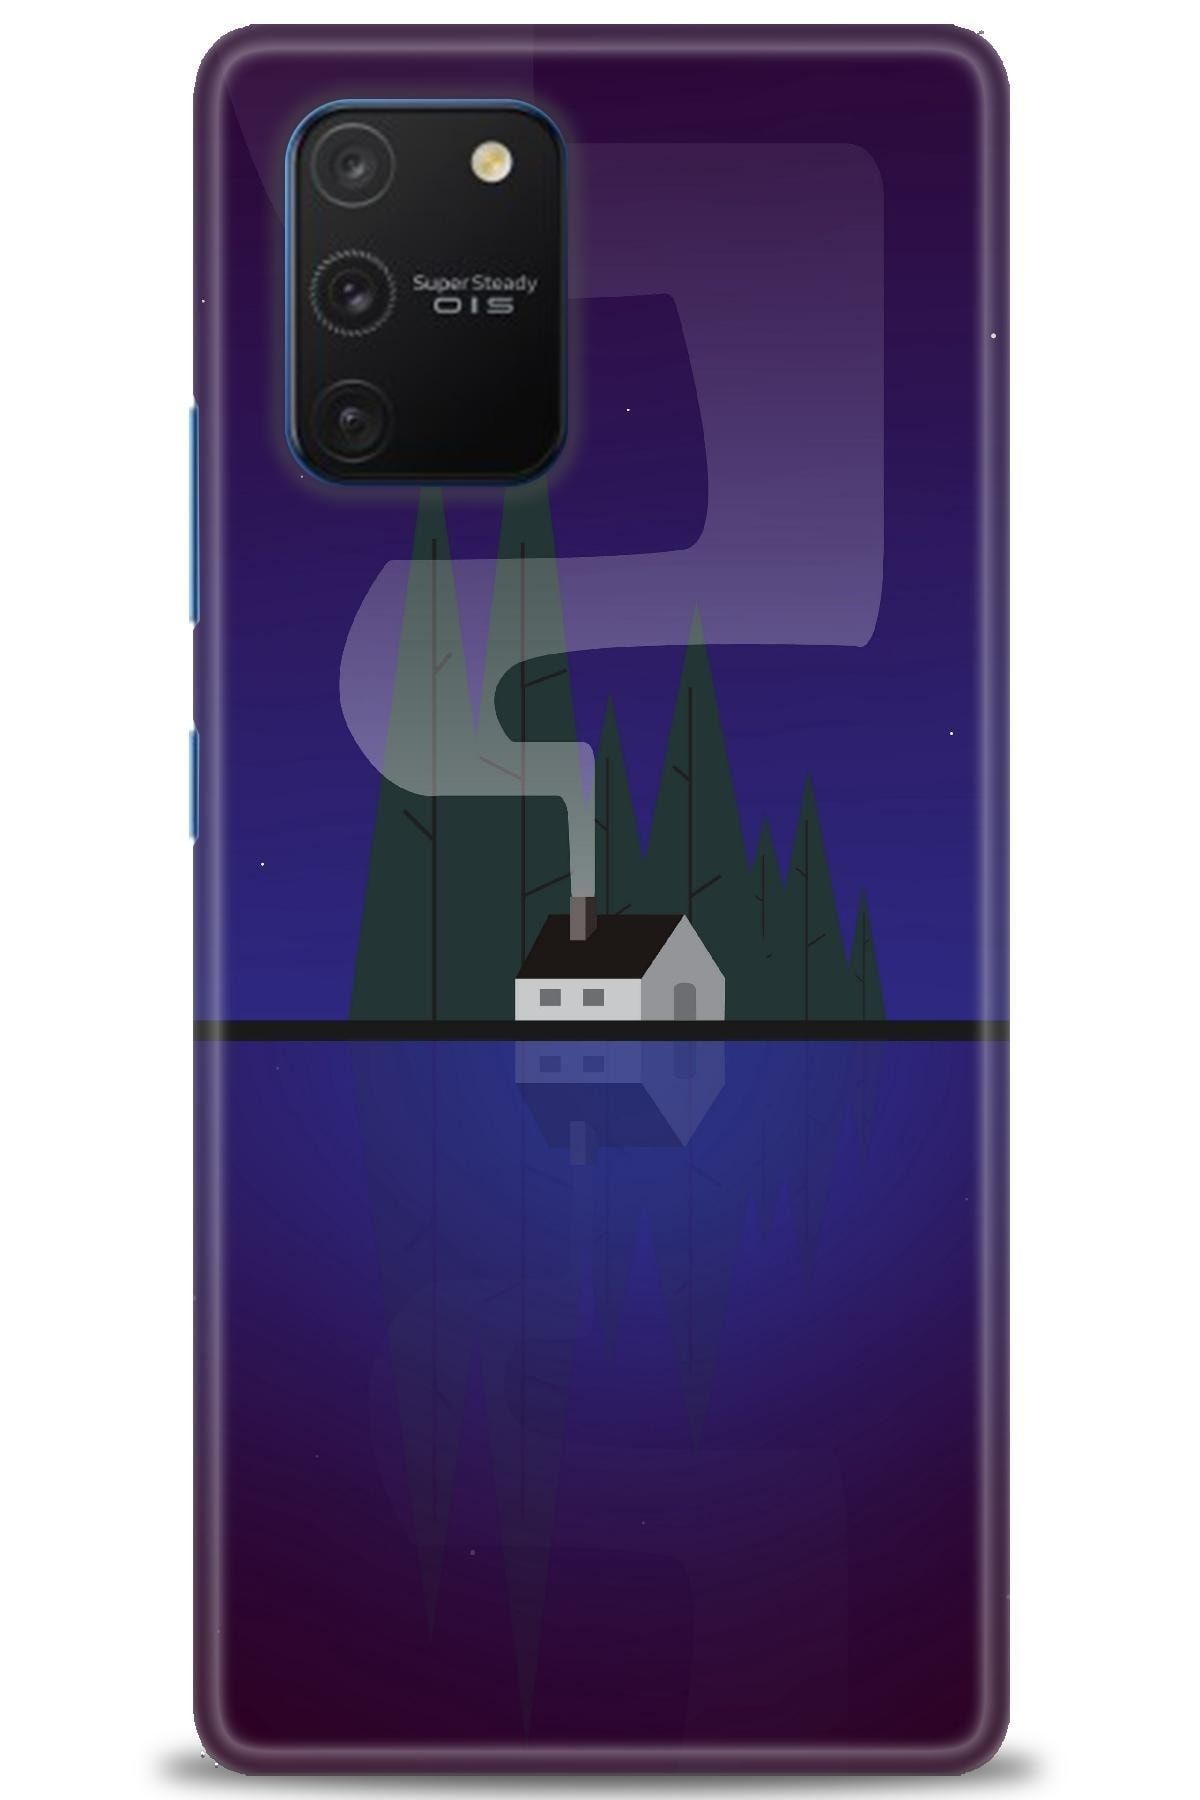 Noprin Samsung Galaxy A91 / S10 Lite Kılıf Hd Baskılı Kılıf - House Lake + Nano Micro Ekran Koruyucu